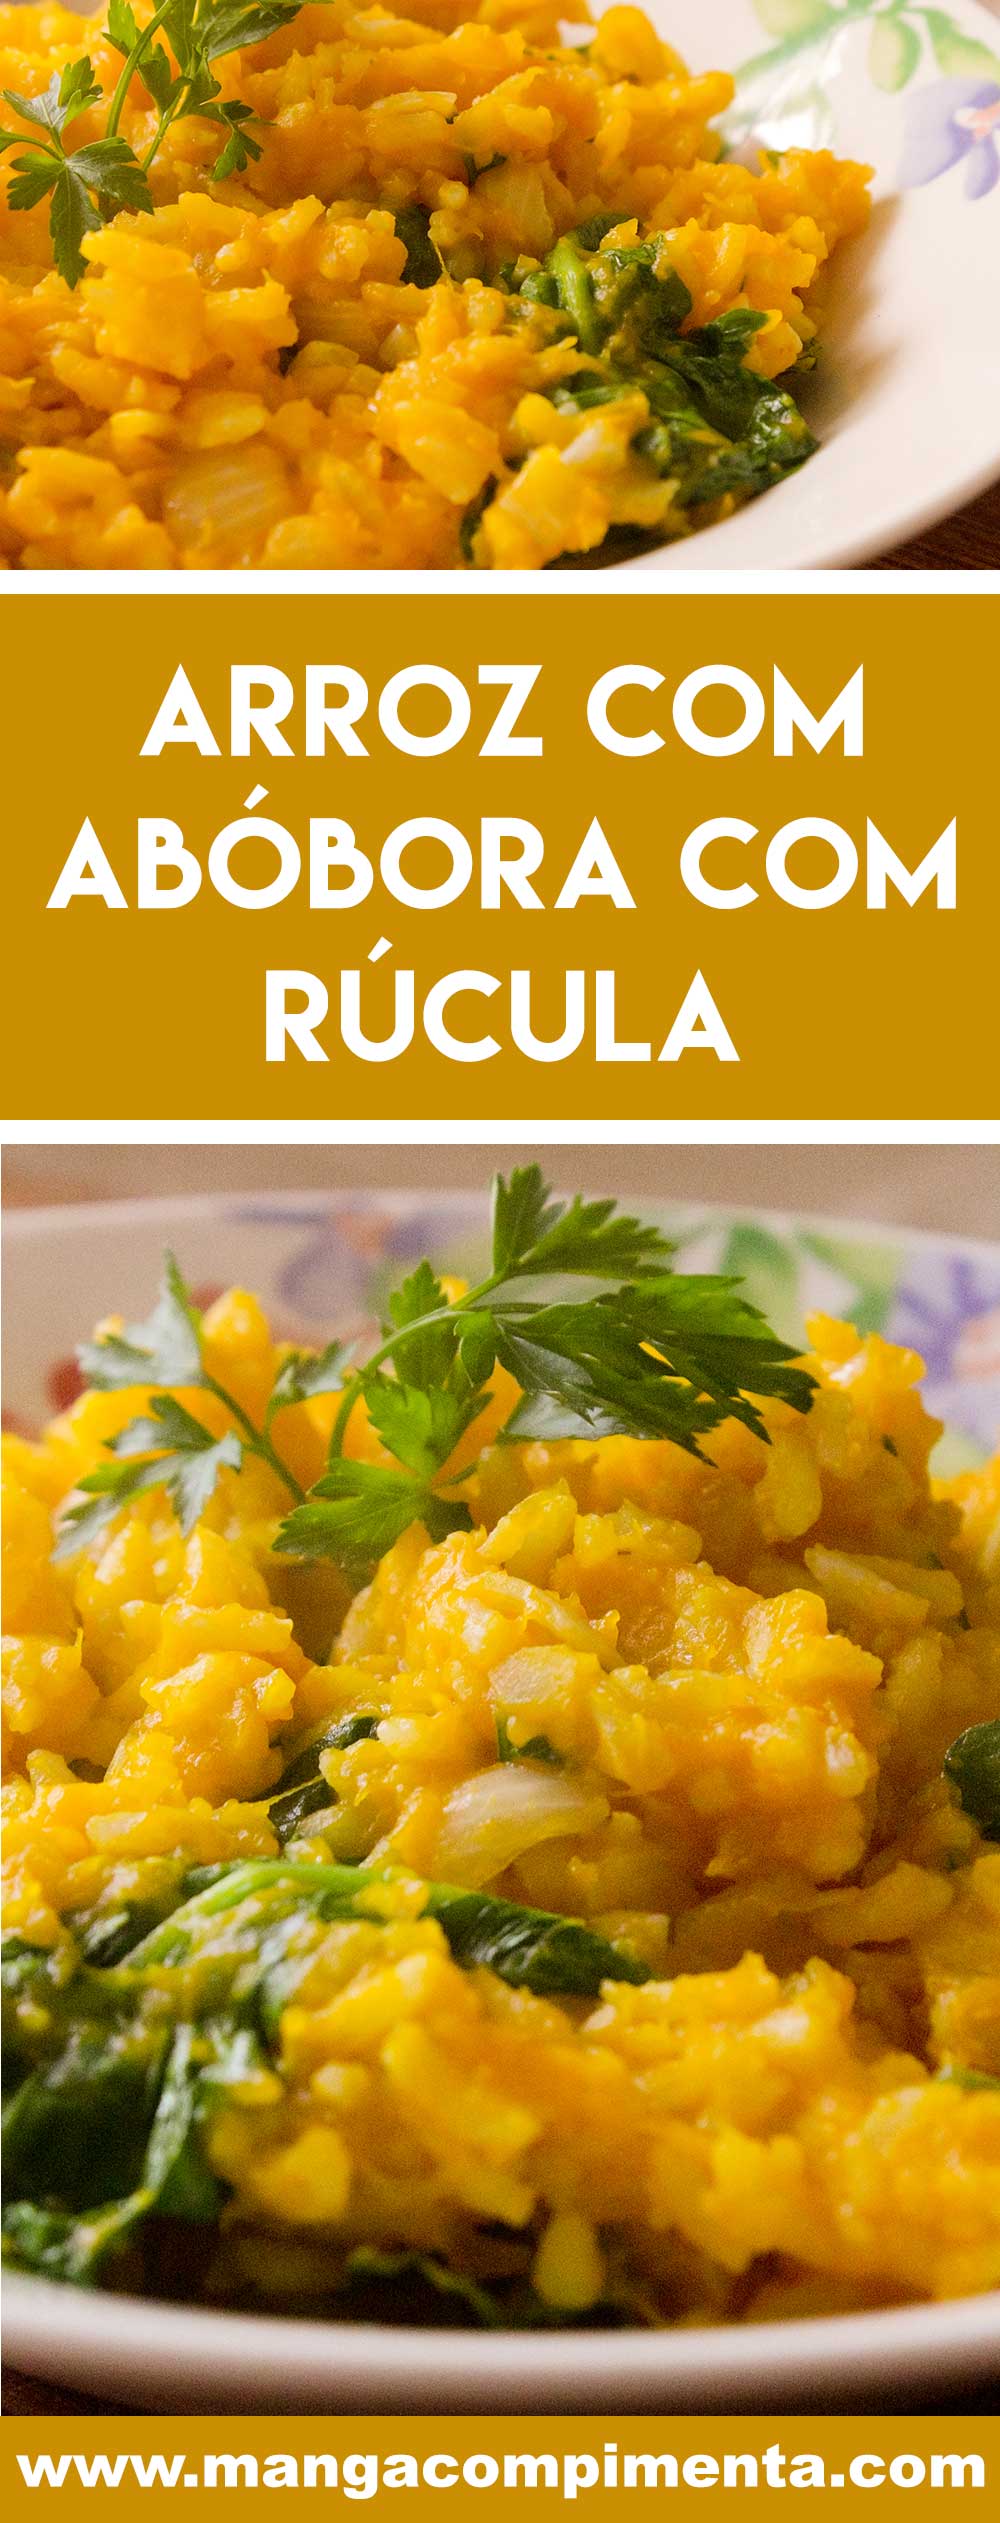 Receita de Arroz com Abóbora com Rúcula - um prato vegetariano delicioso e completo para o almoço da semana.